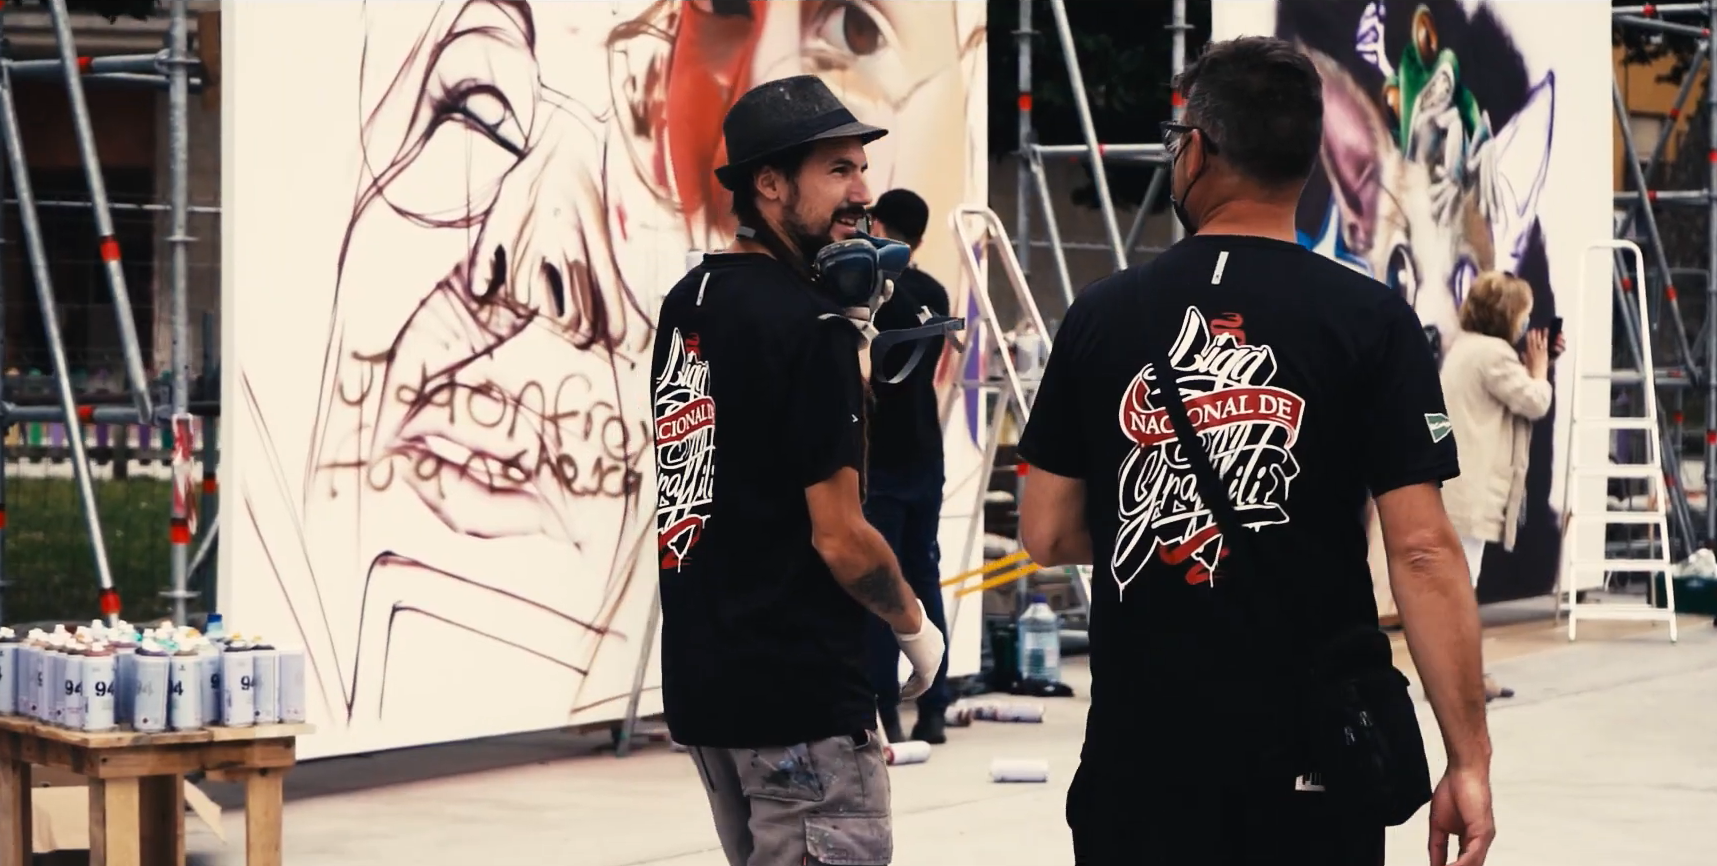 La Liga Nacional del Graffiti convertirá a Huelva en el epicentro del Arte Urbano